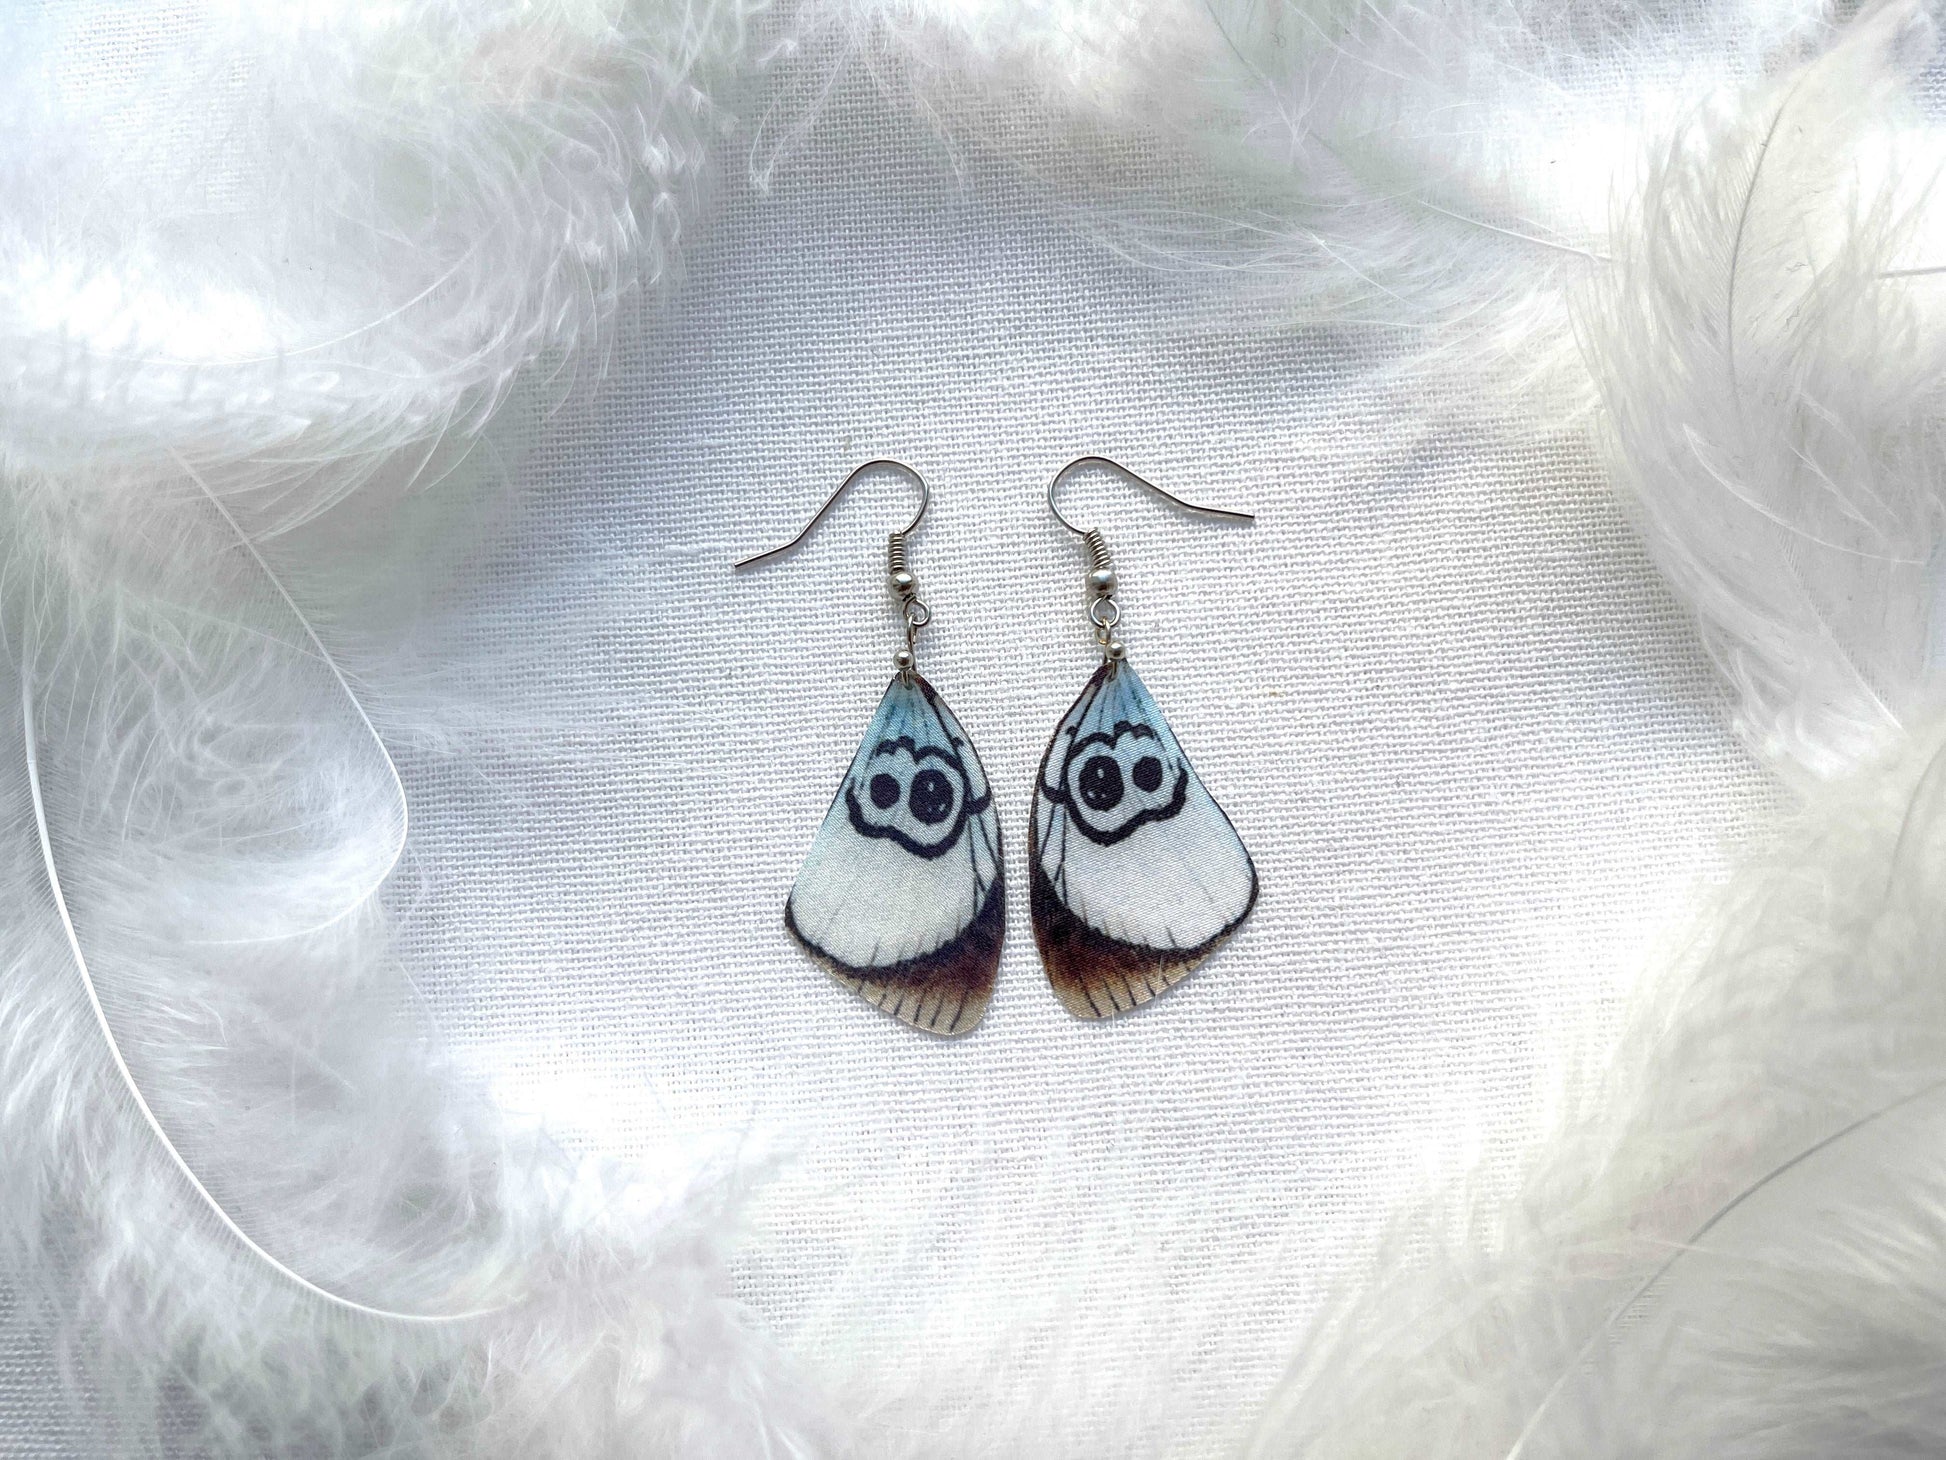 White butterfly wing earrings